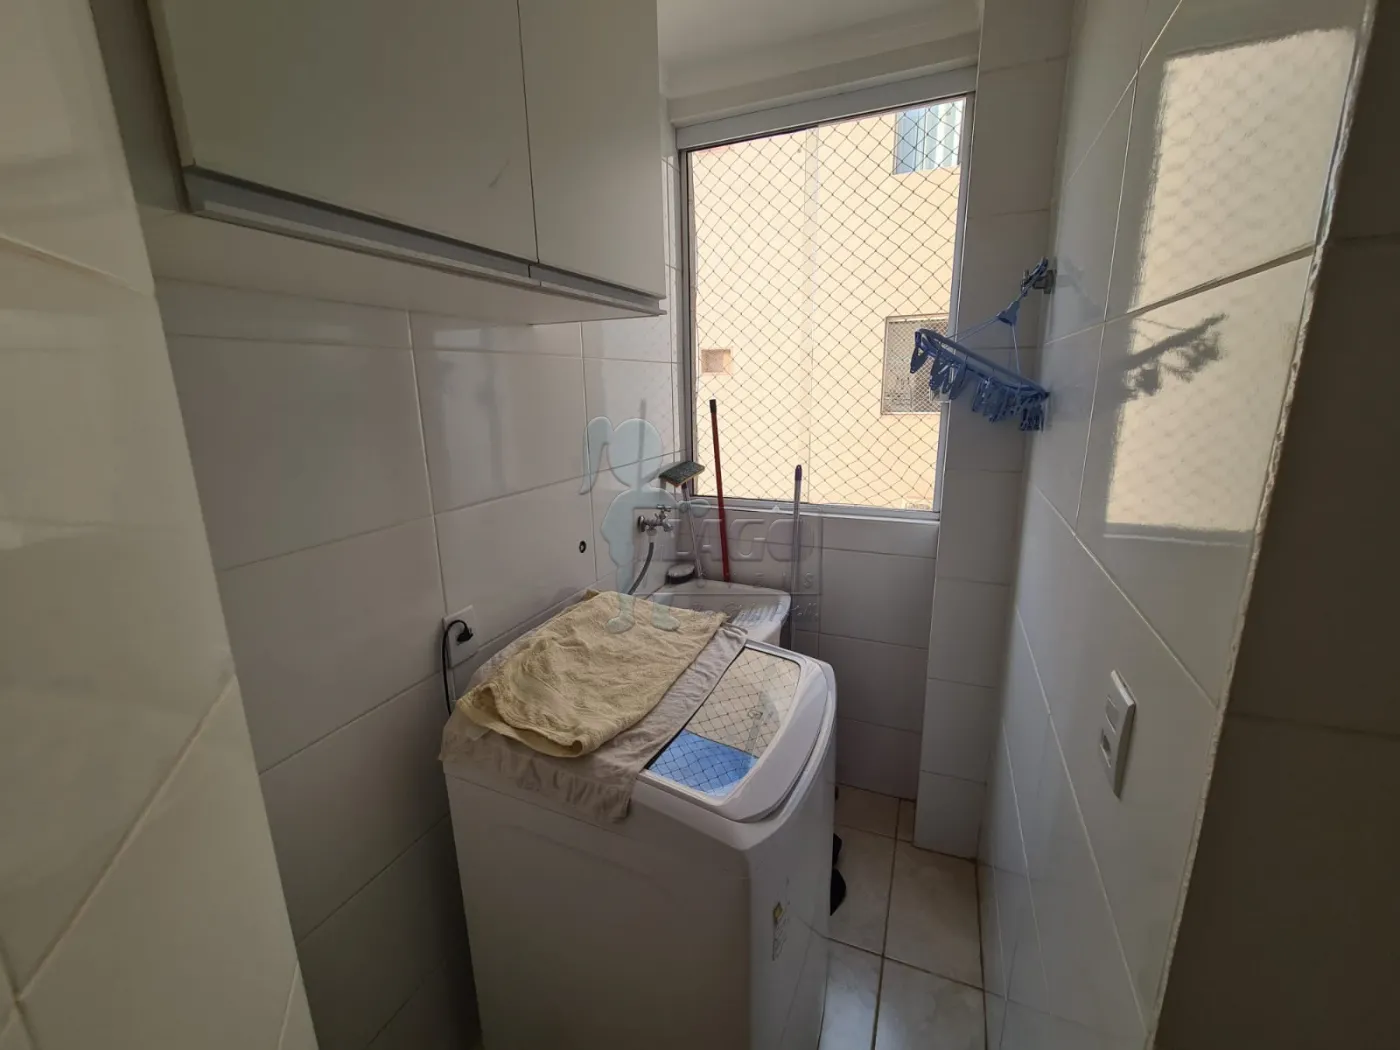 Alugar Apartamento / Padrão em Ribeirão Preto R$ 950,00 - Foto 7